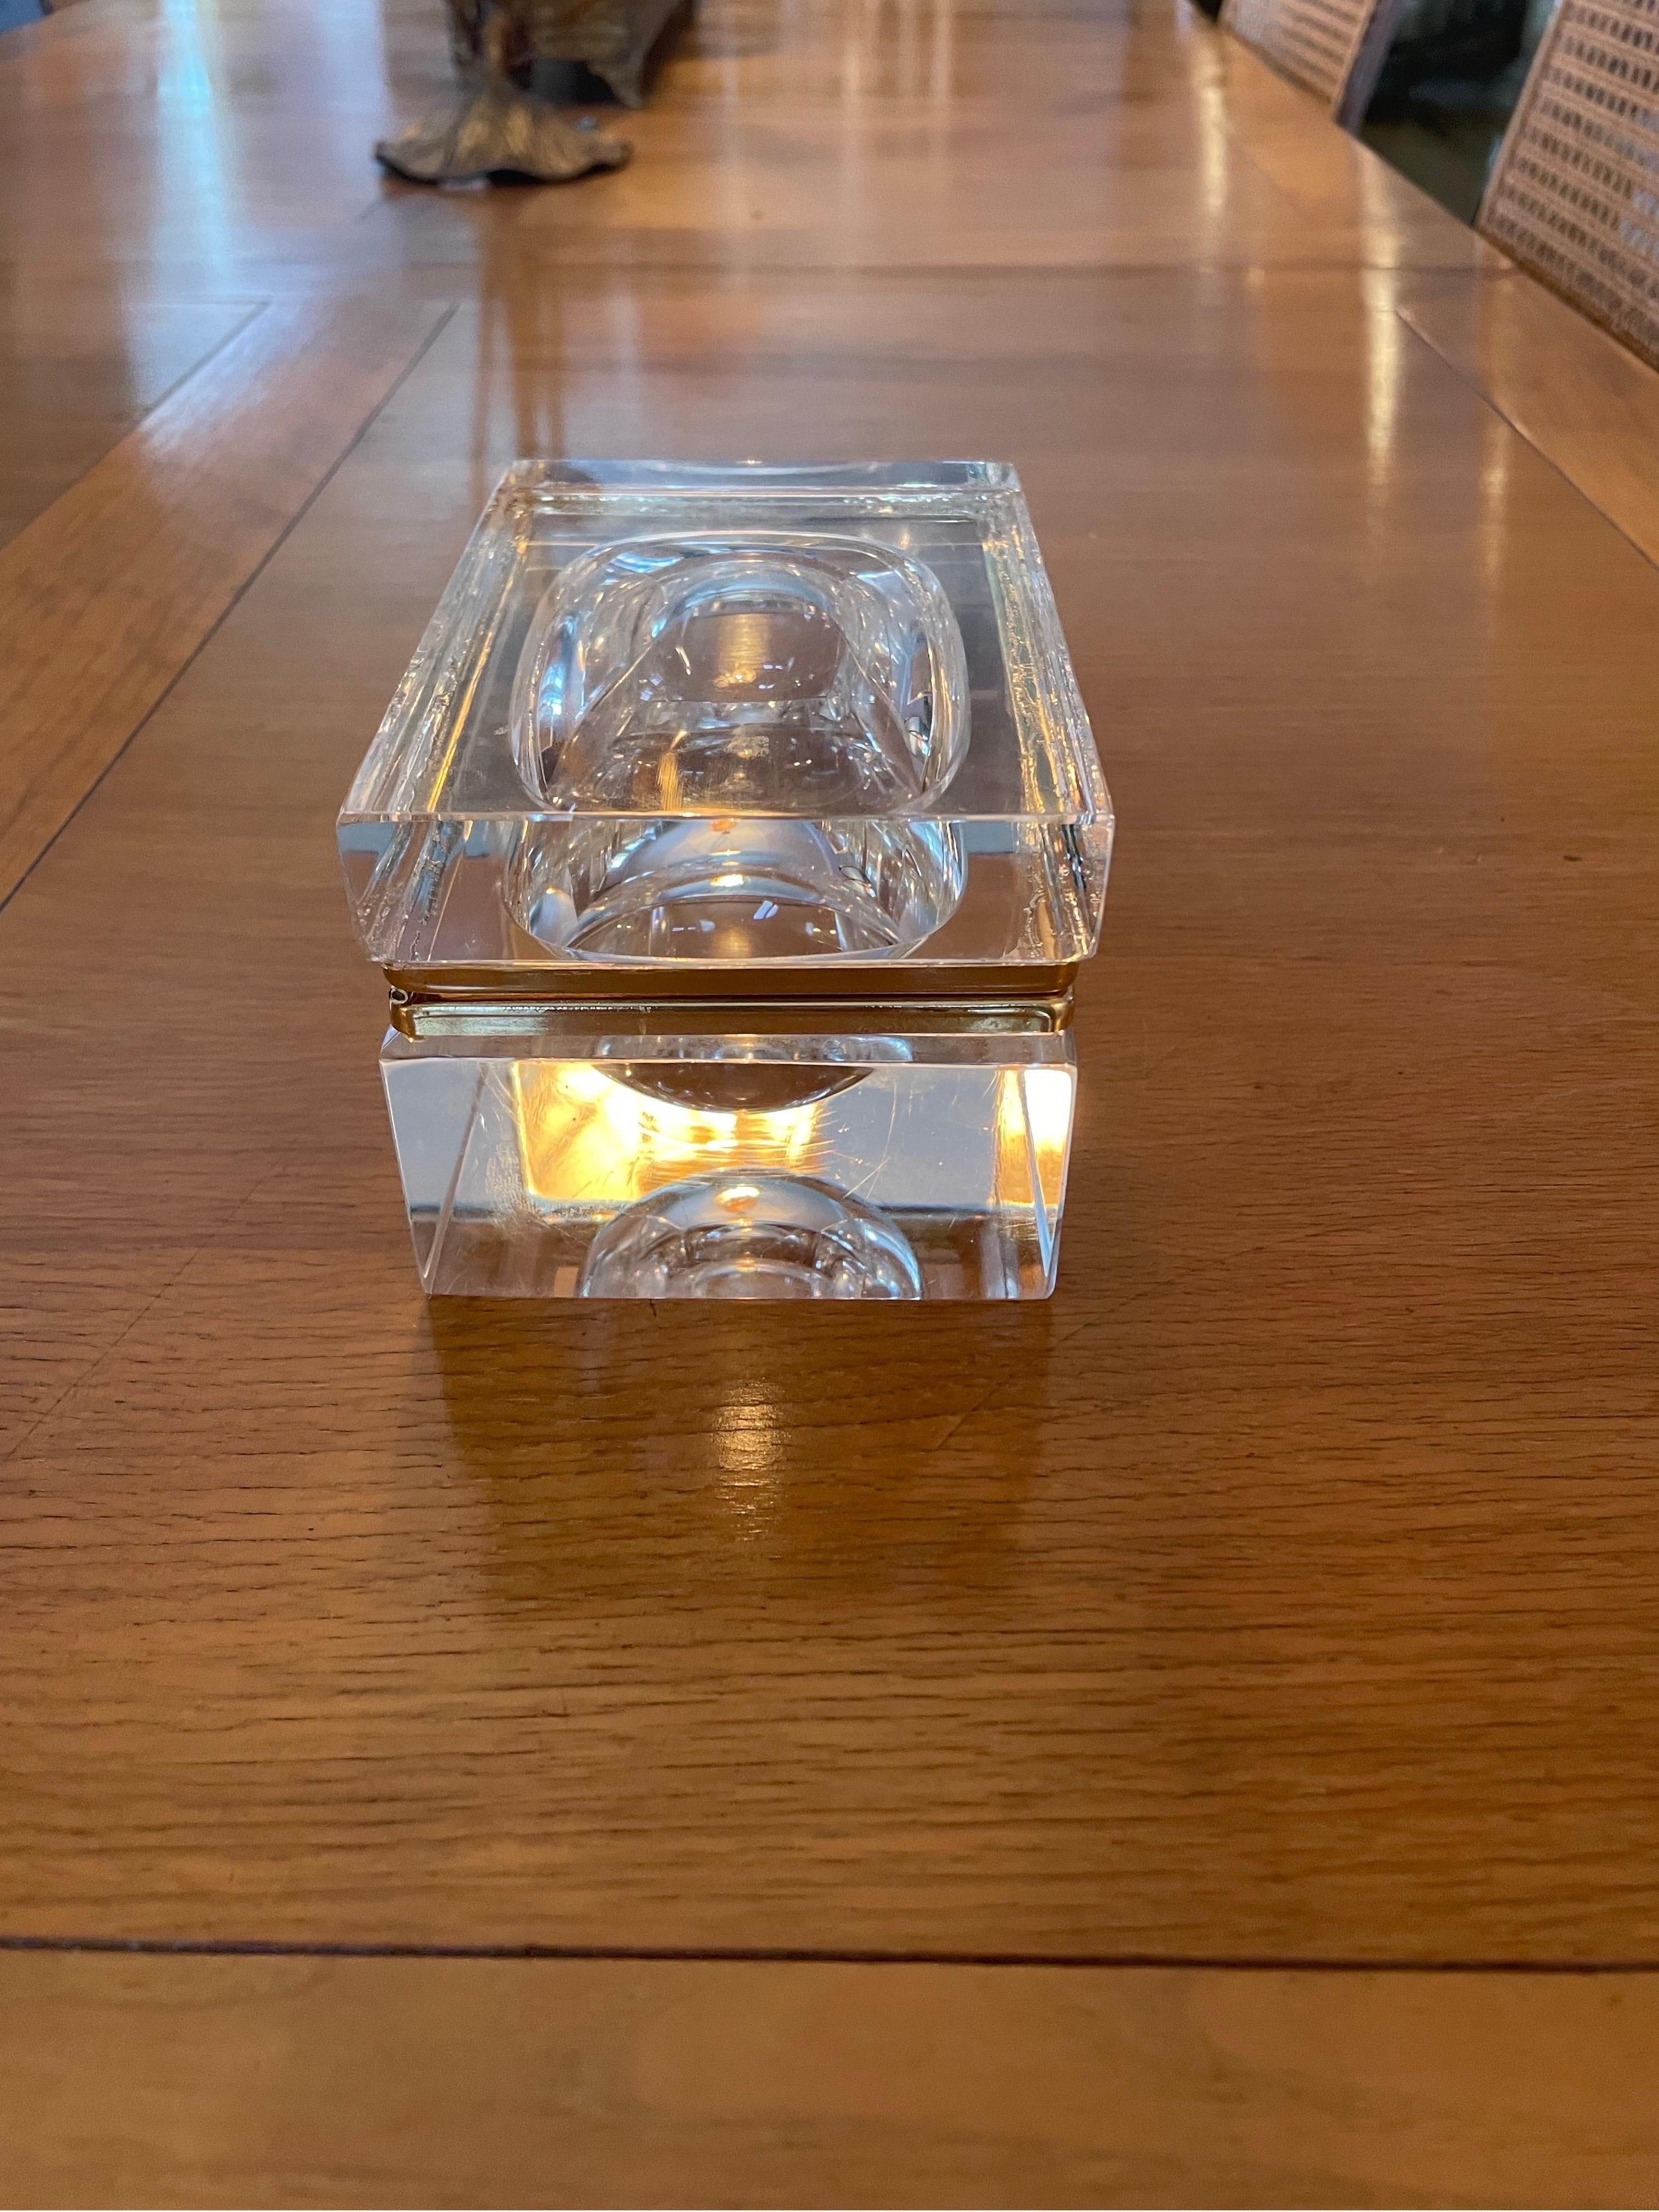 Dies ist eine wunderbare schwere Murano Sommerso Glas-Box in sehr gutem Zustand. Keine Splitter im Glas 
Hergestellt in Italien wahrscheinlich in den 1950-60er Jahren 